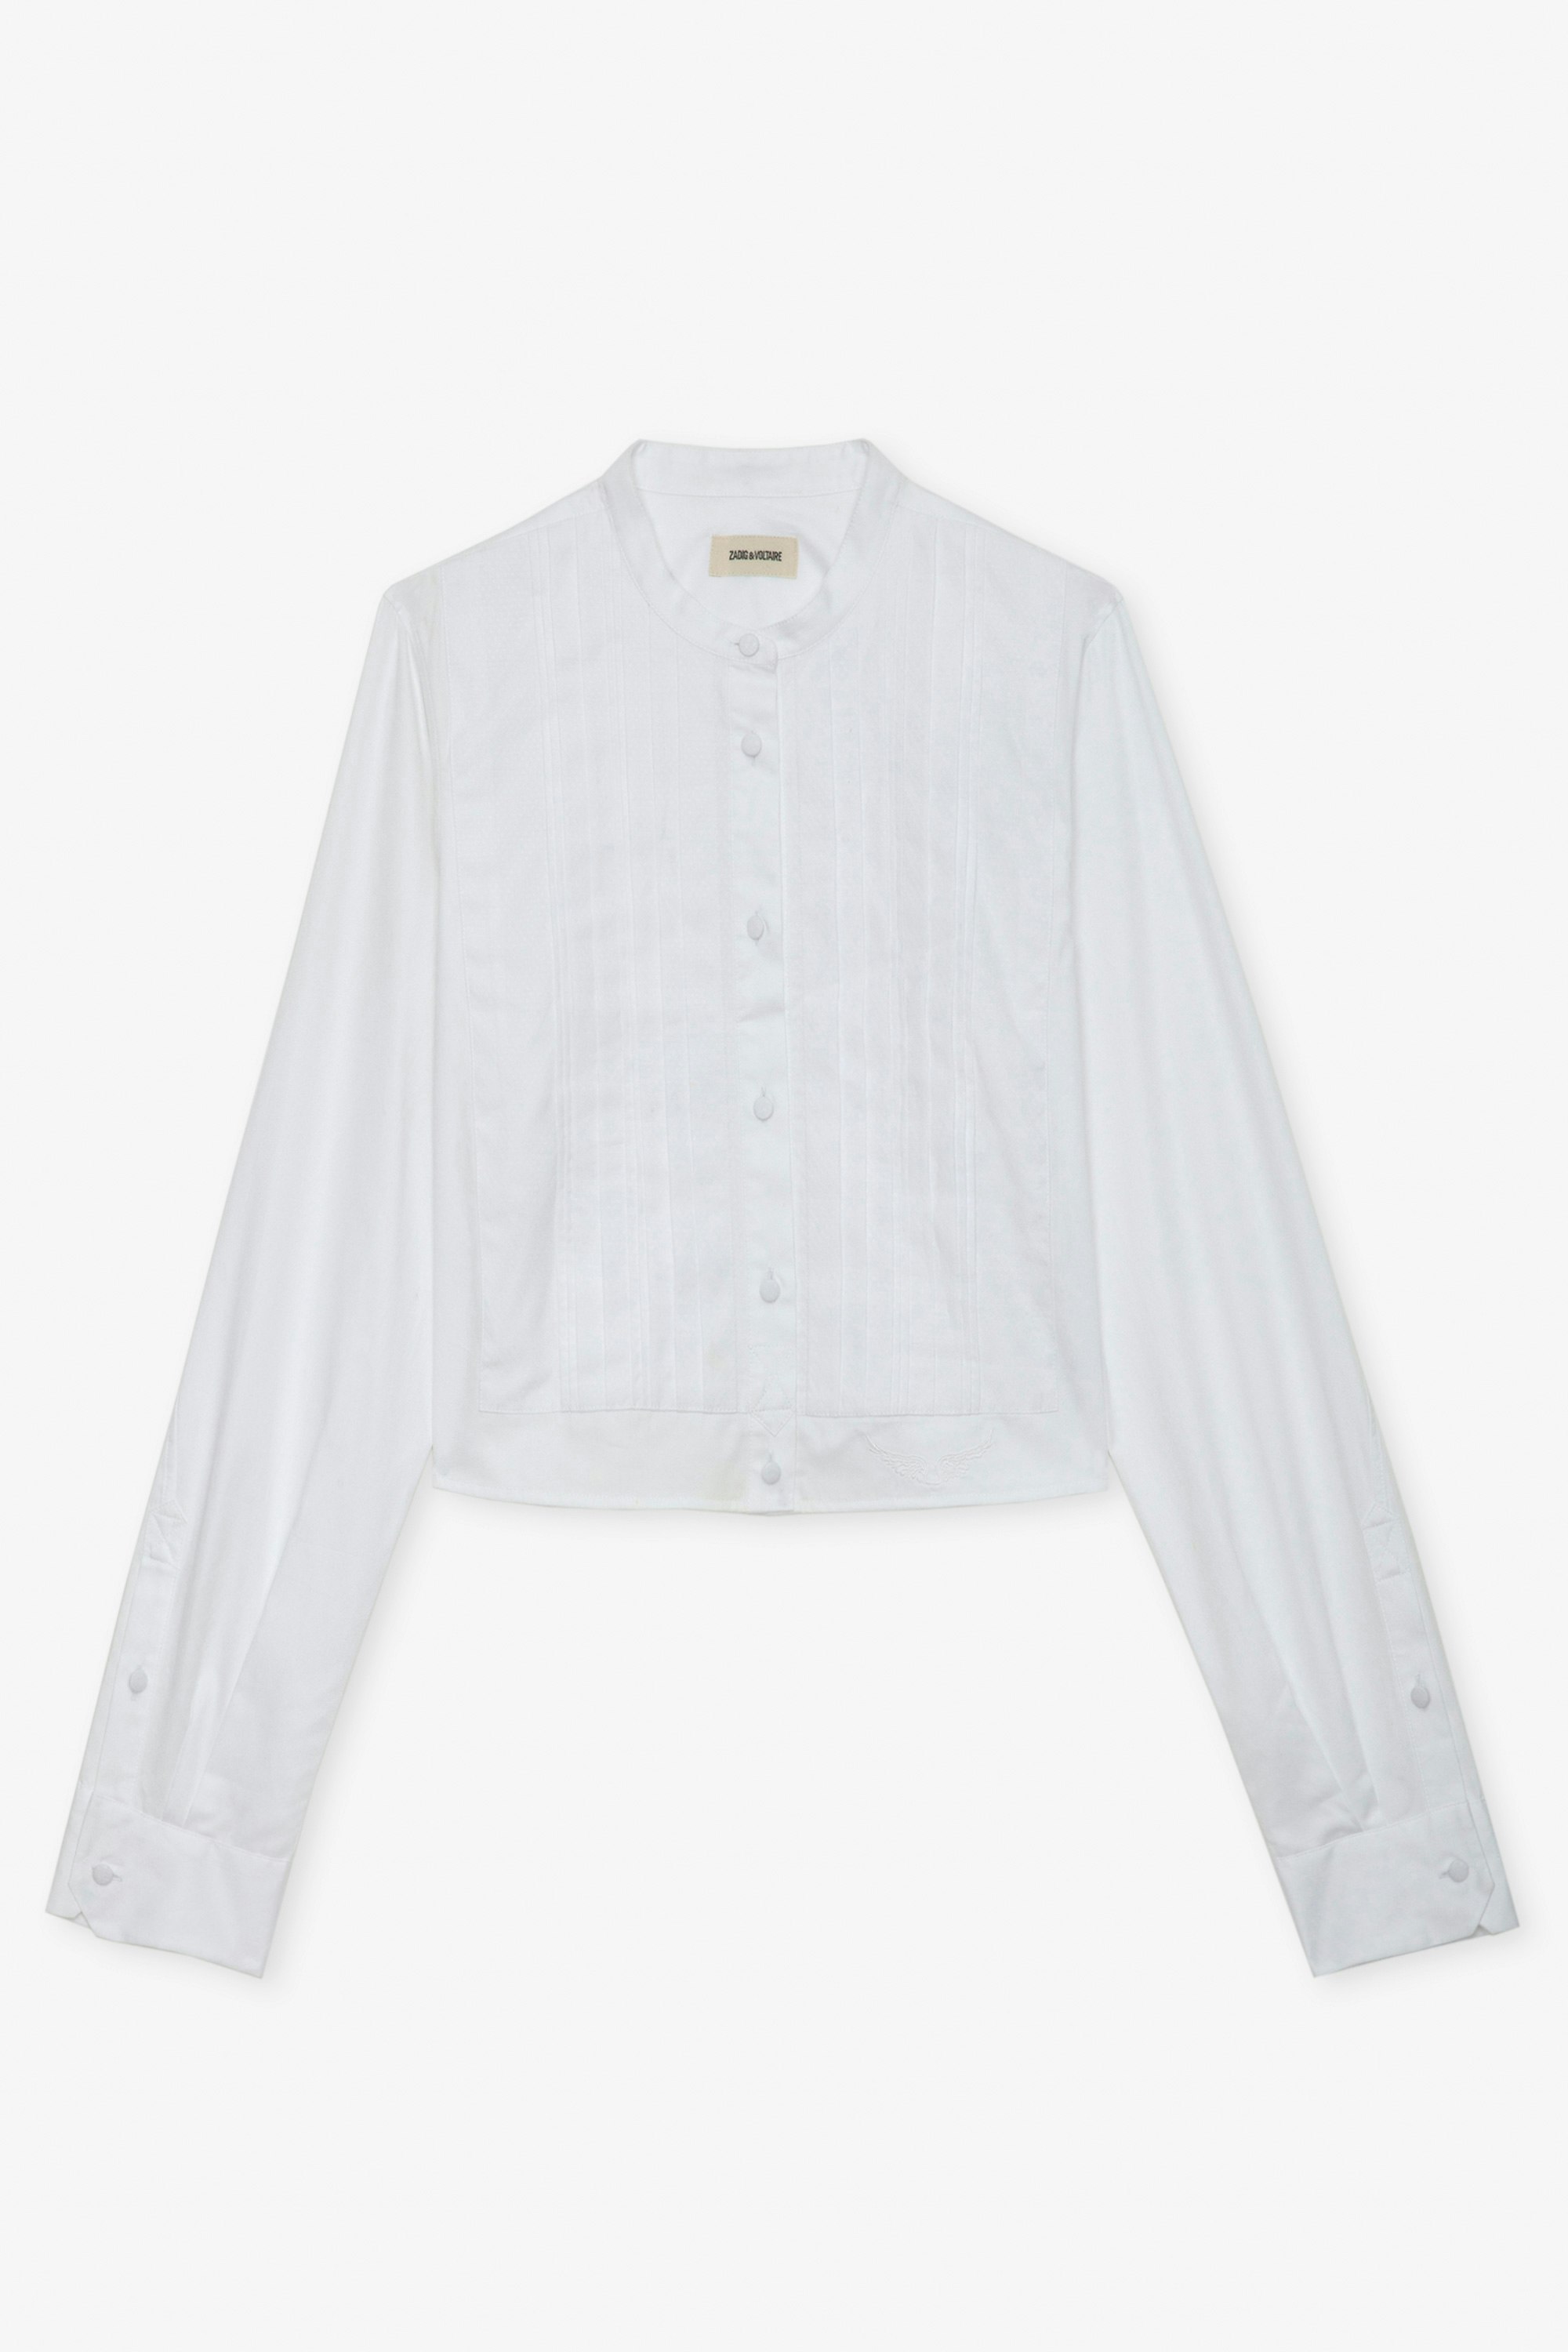 Camisa Theby - Camisa blanca corta de algodón con bordado de alas y detalles plisados.